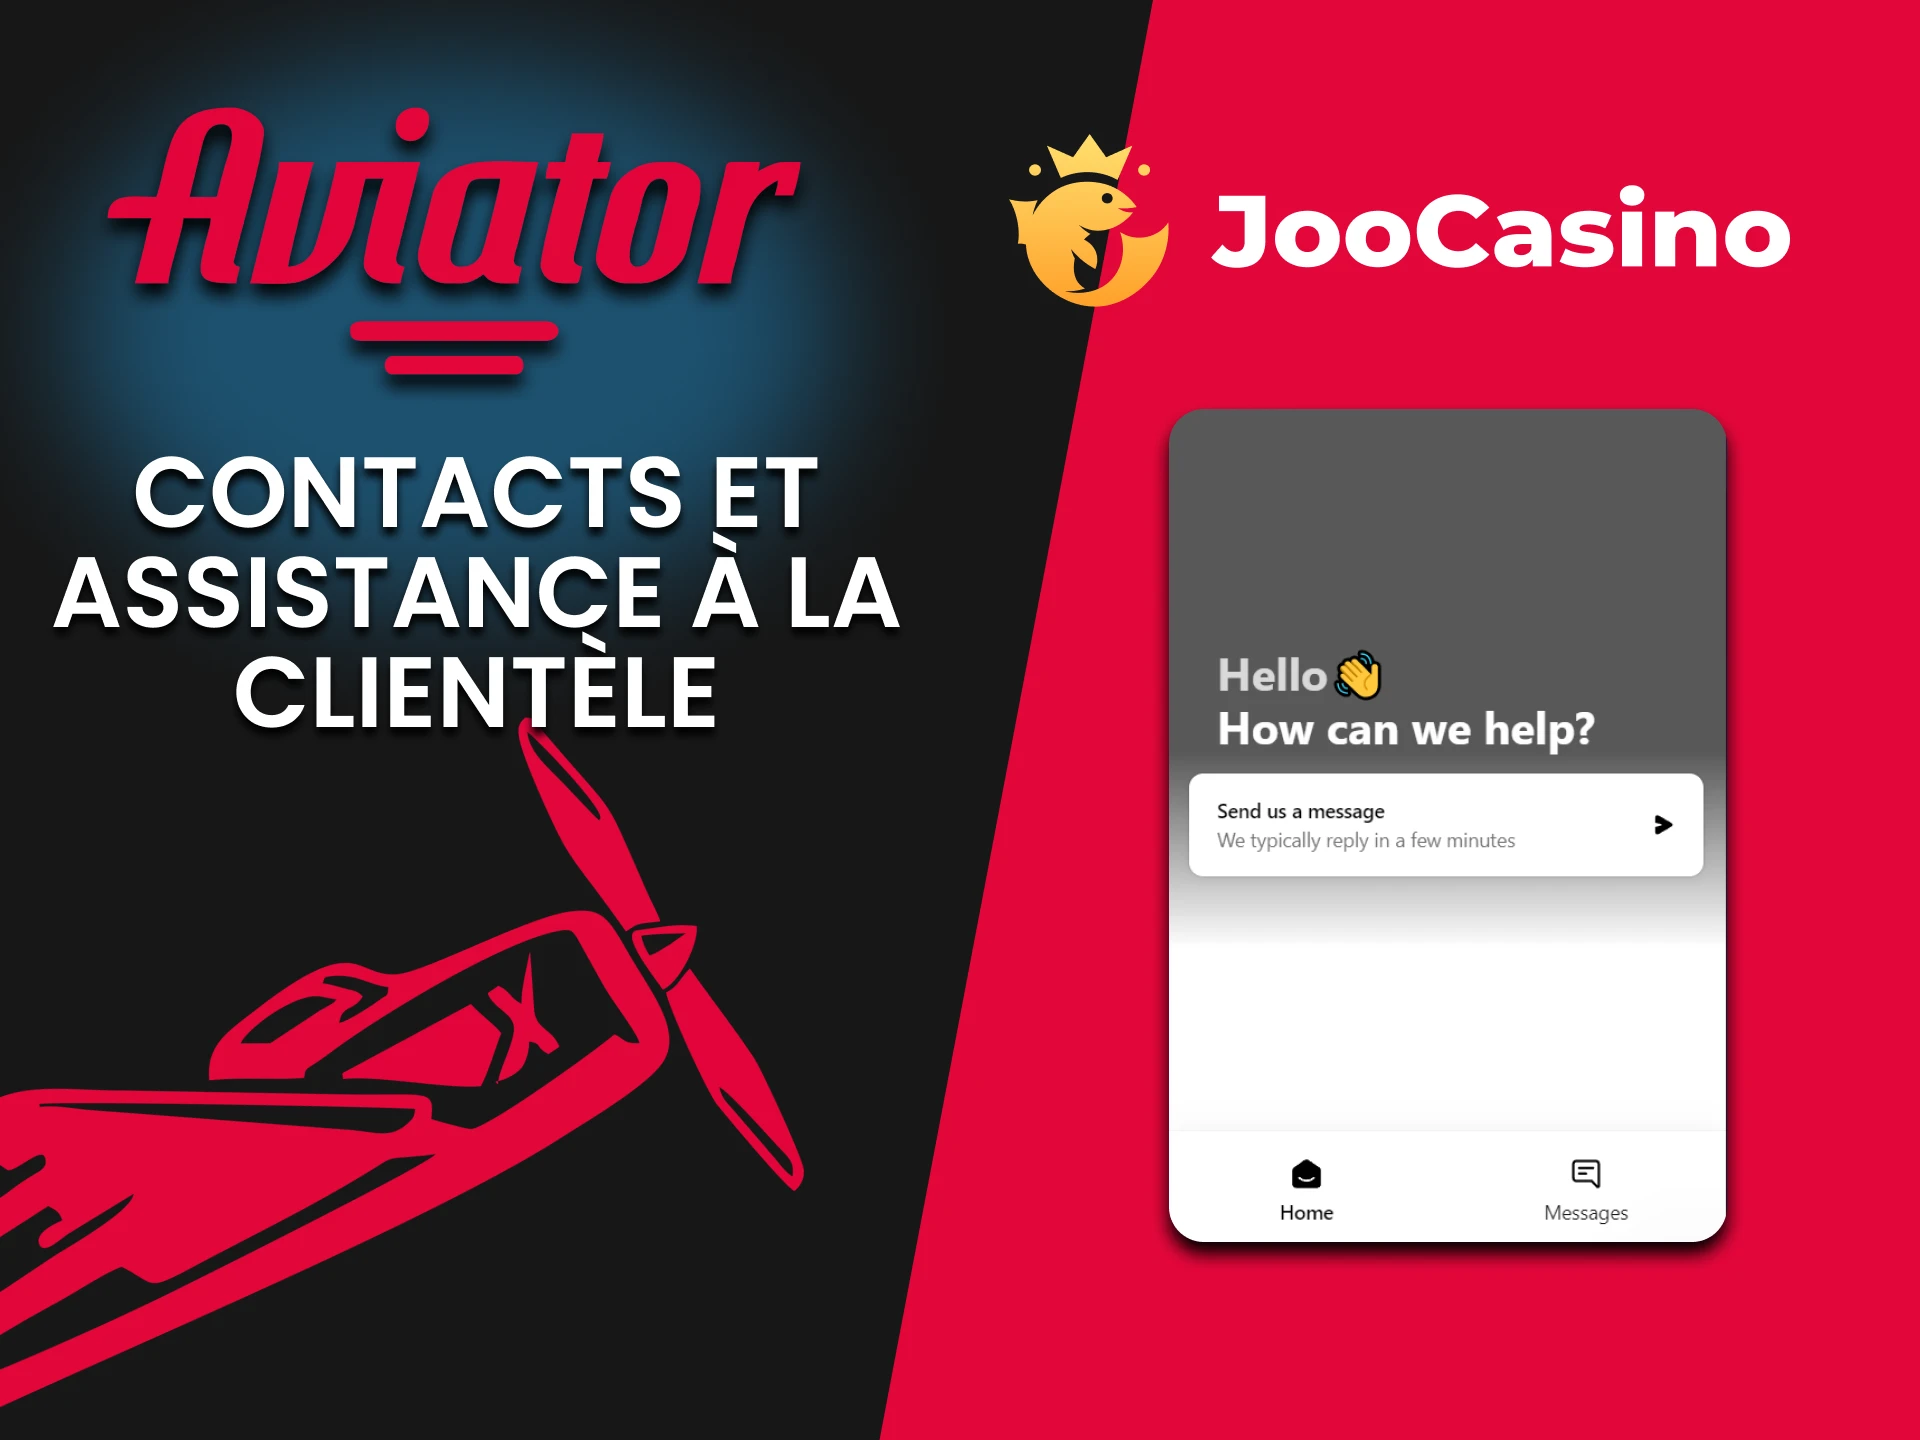 Joo Casino propose un chat en direct pour assister les joueurs d'Aviator.